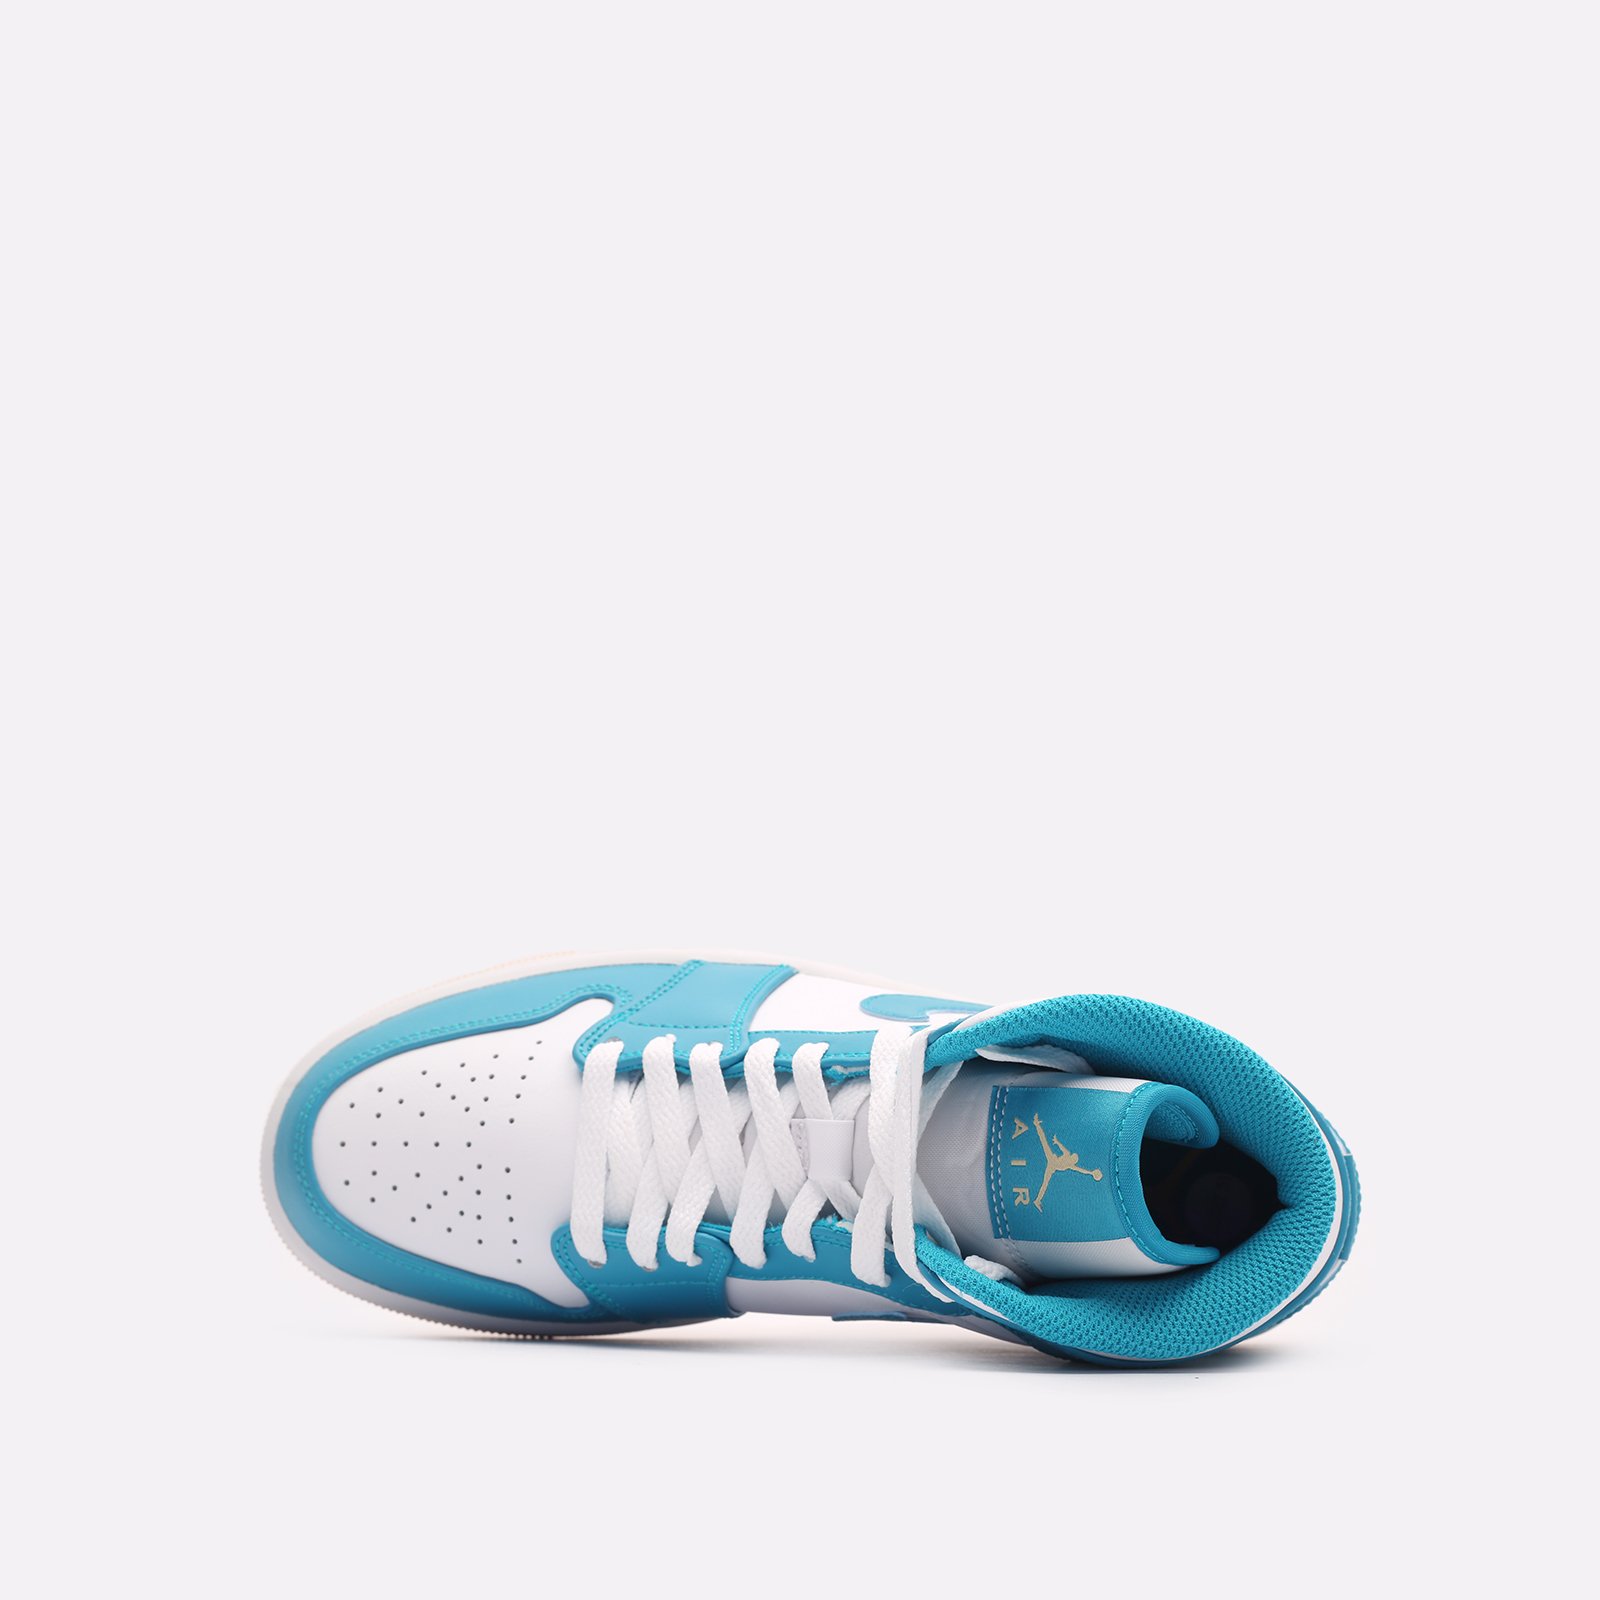 мужские кроссовки Jordan 1 Mid  (DQ8426-400) DQ8426-400 - цена, описание, фото 6